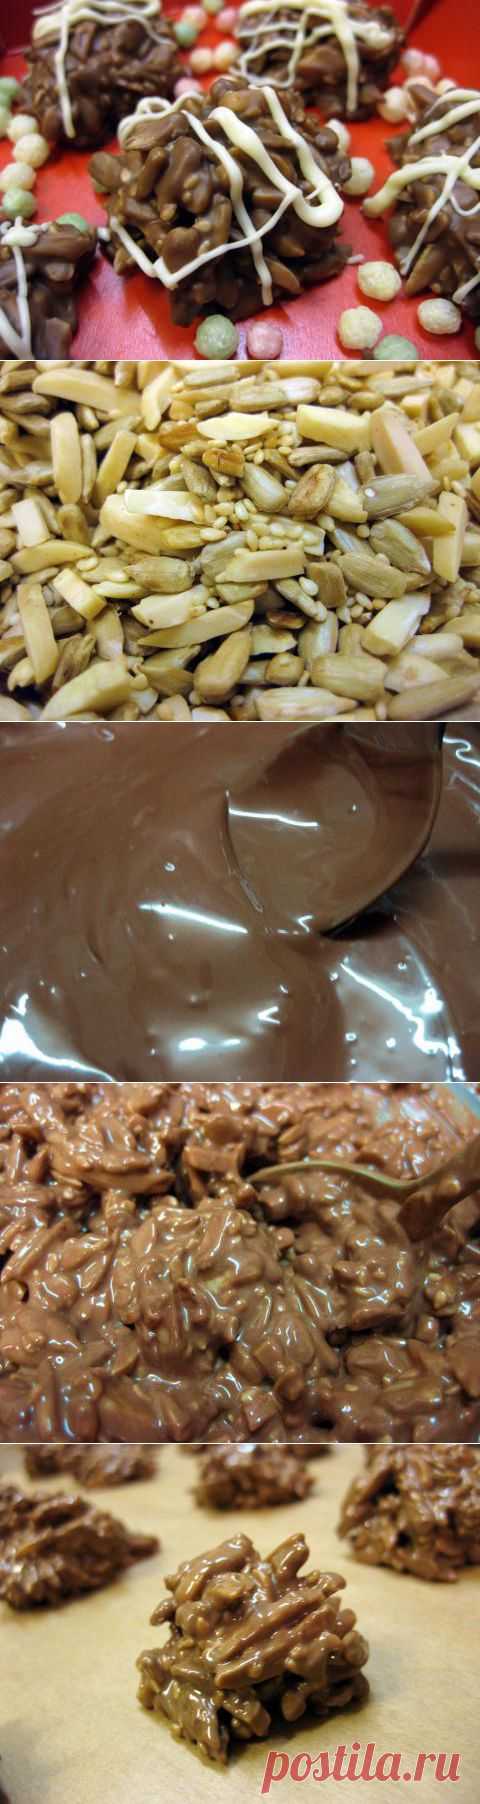 Орехи в шоколаде | 4vkusa.ru